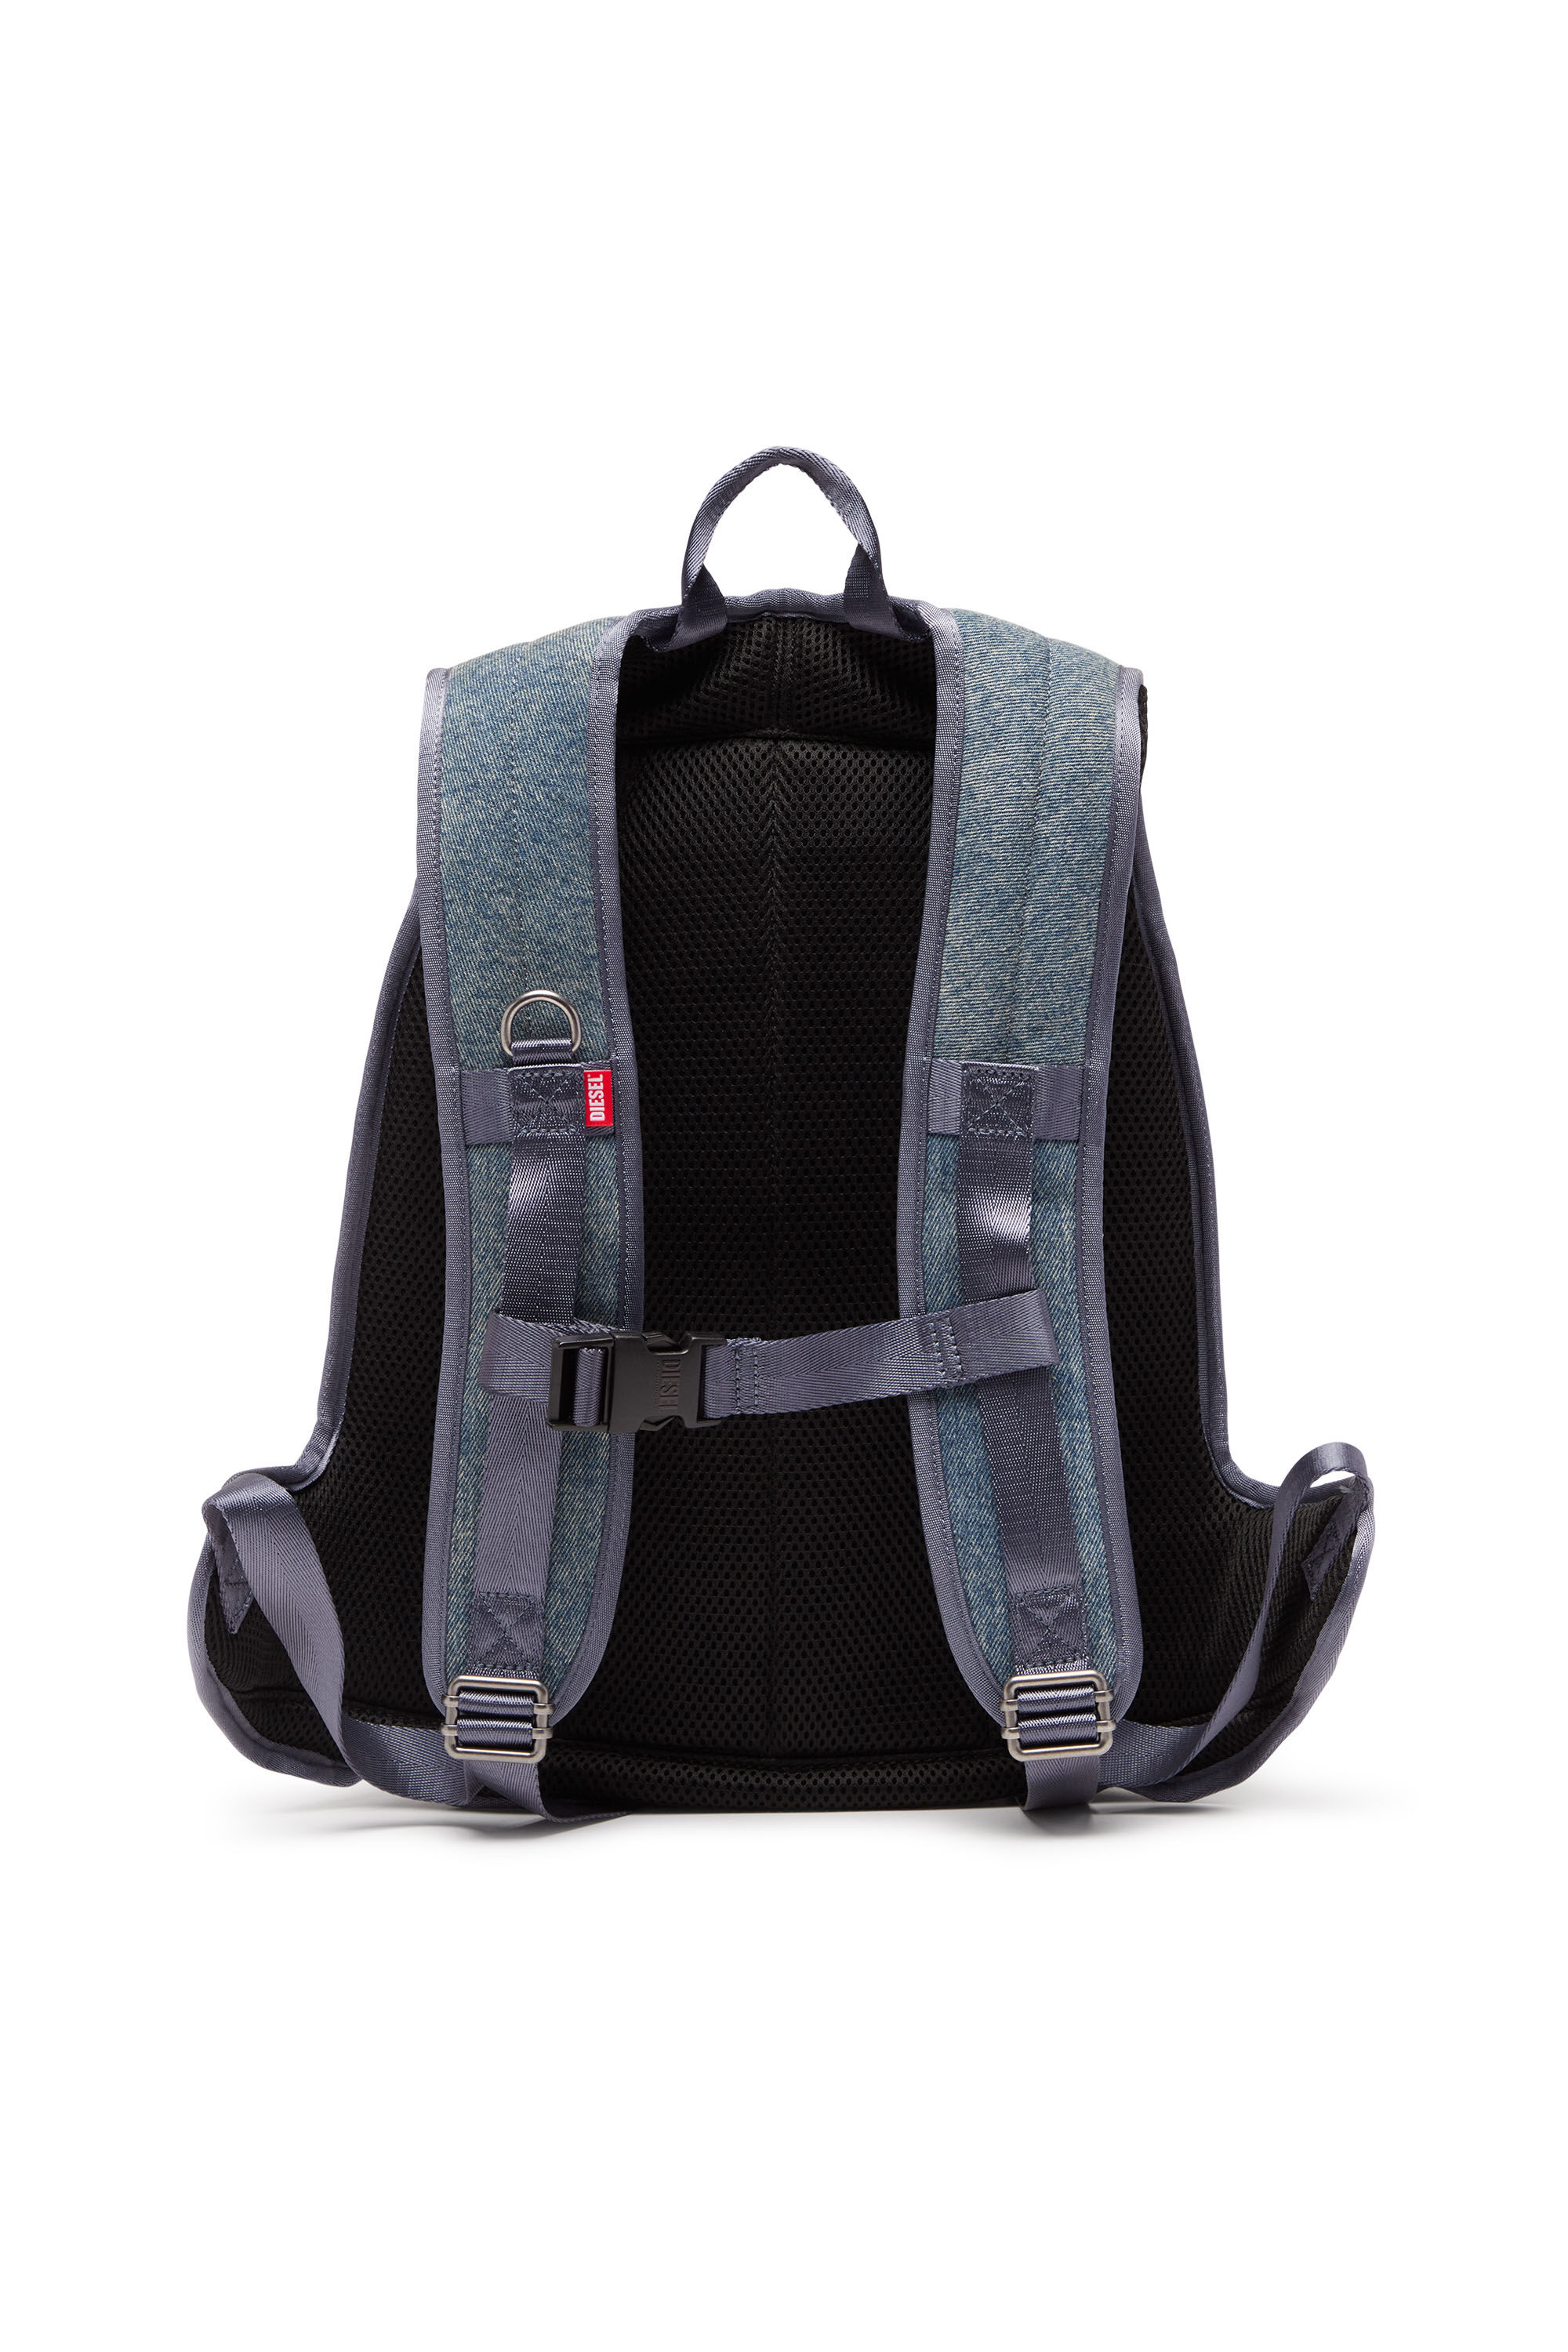 Diesel - 1DR-POD BACKPACK, Man 1DR-Pod Backpack - Hard shell denim backpack in Multicolor - Image 3